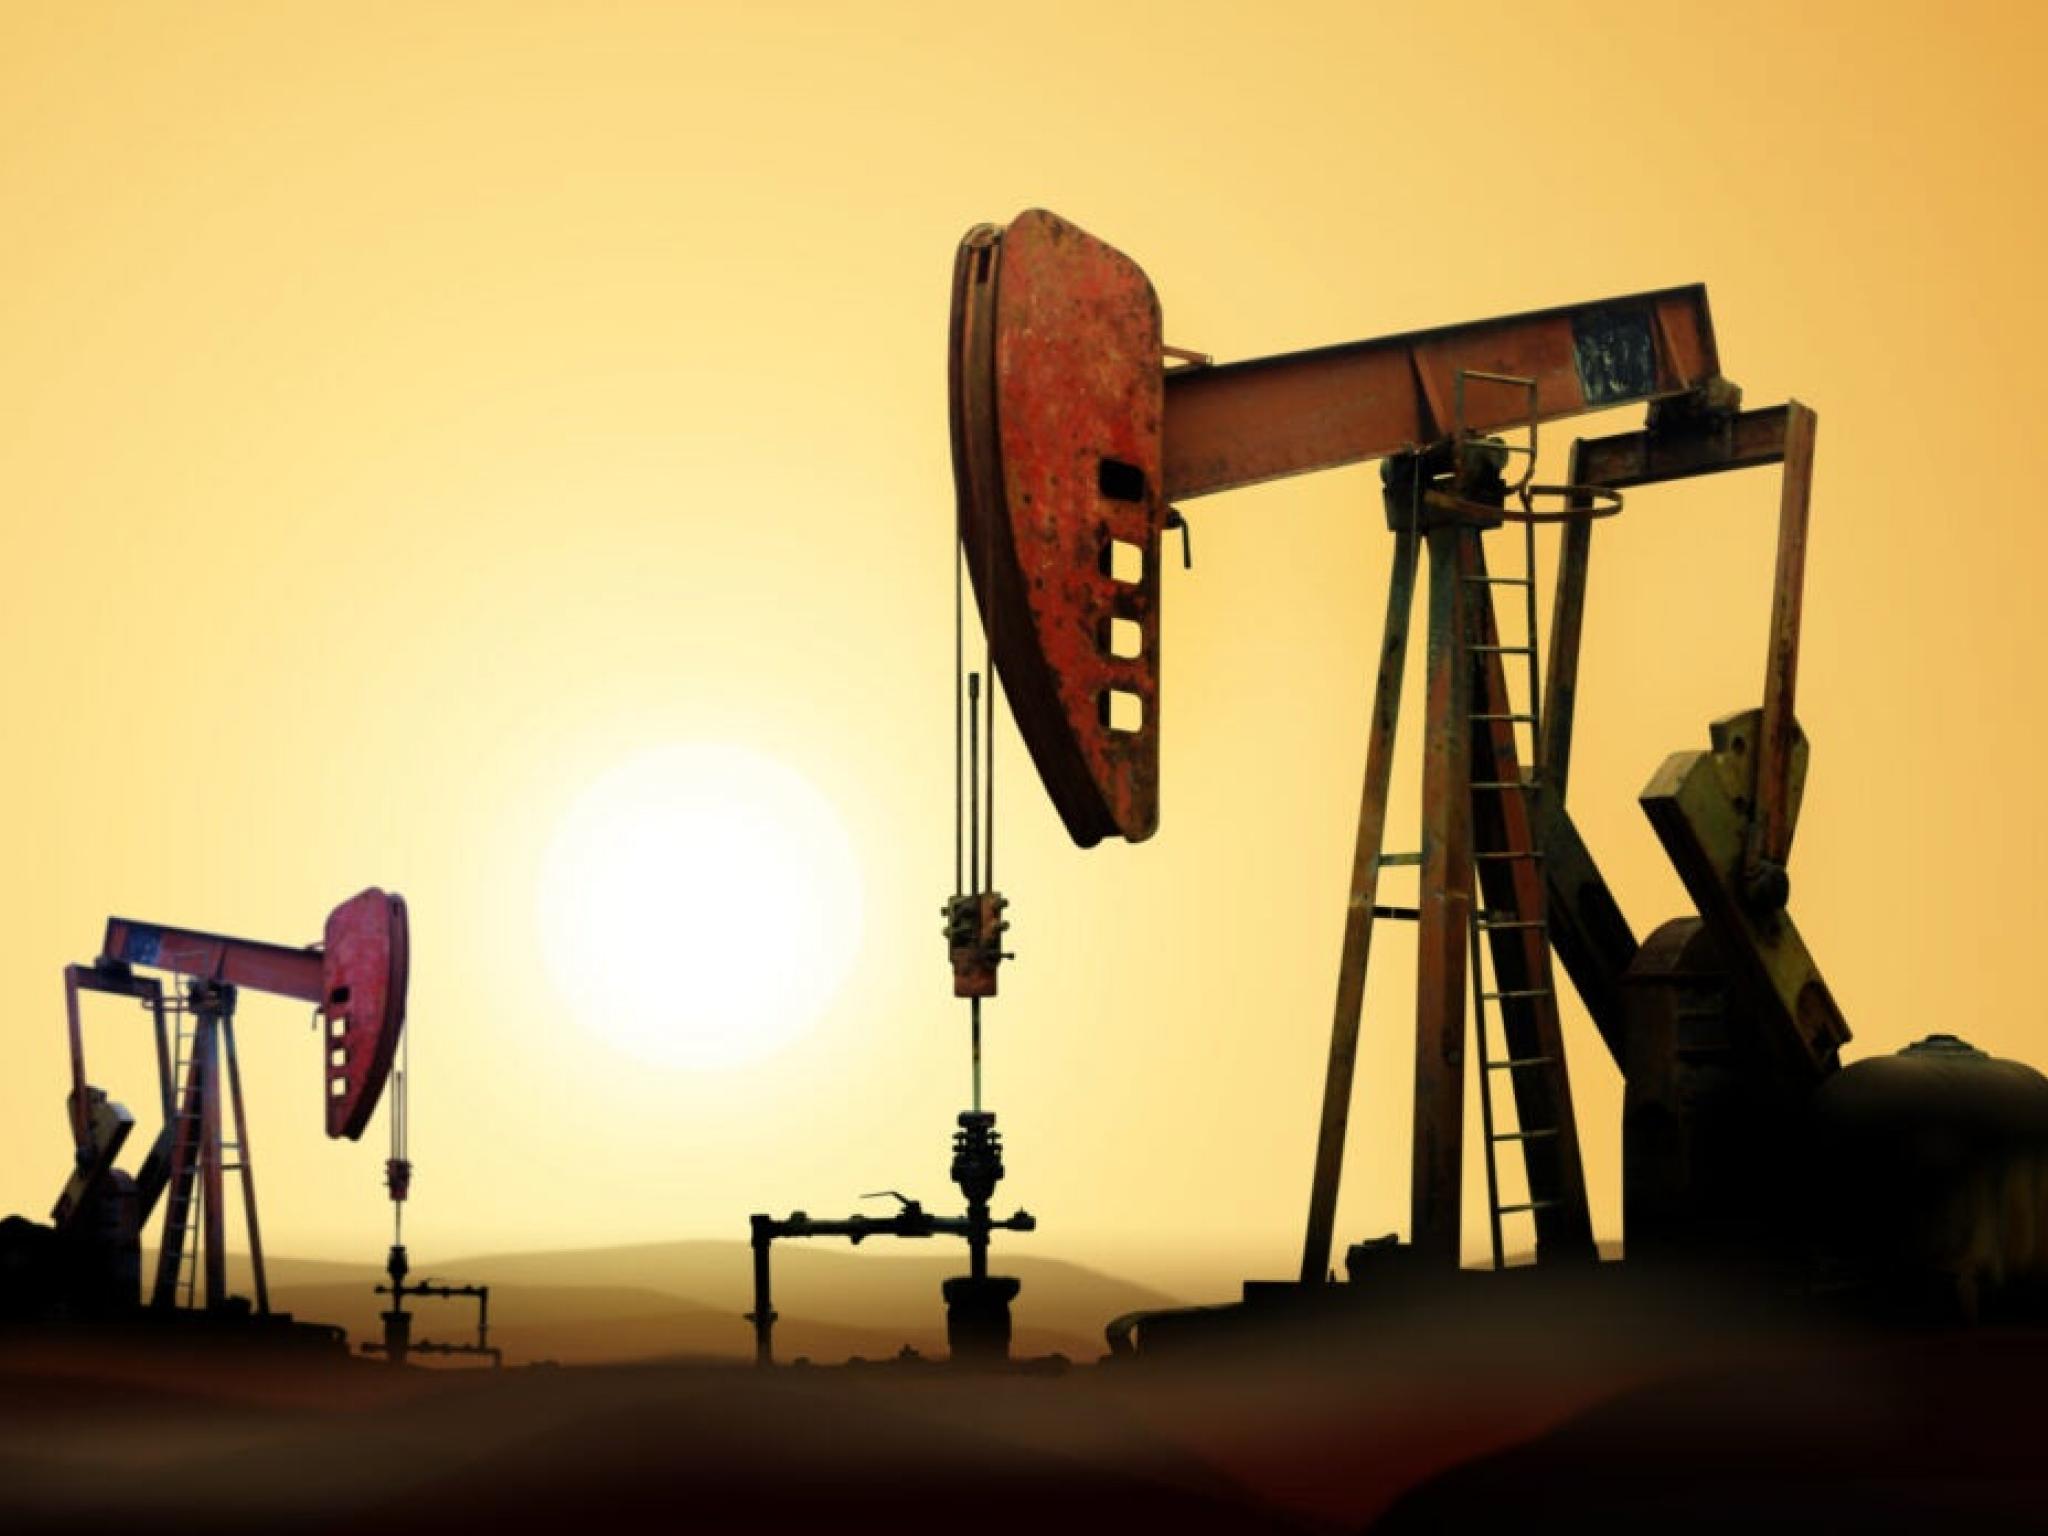  crude-oil-rises-1-verastem-shares-slide 